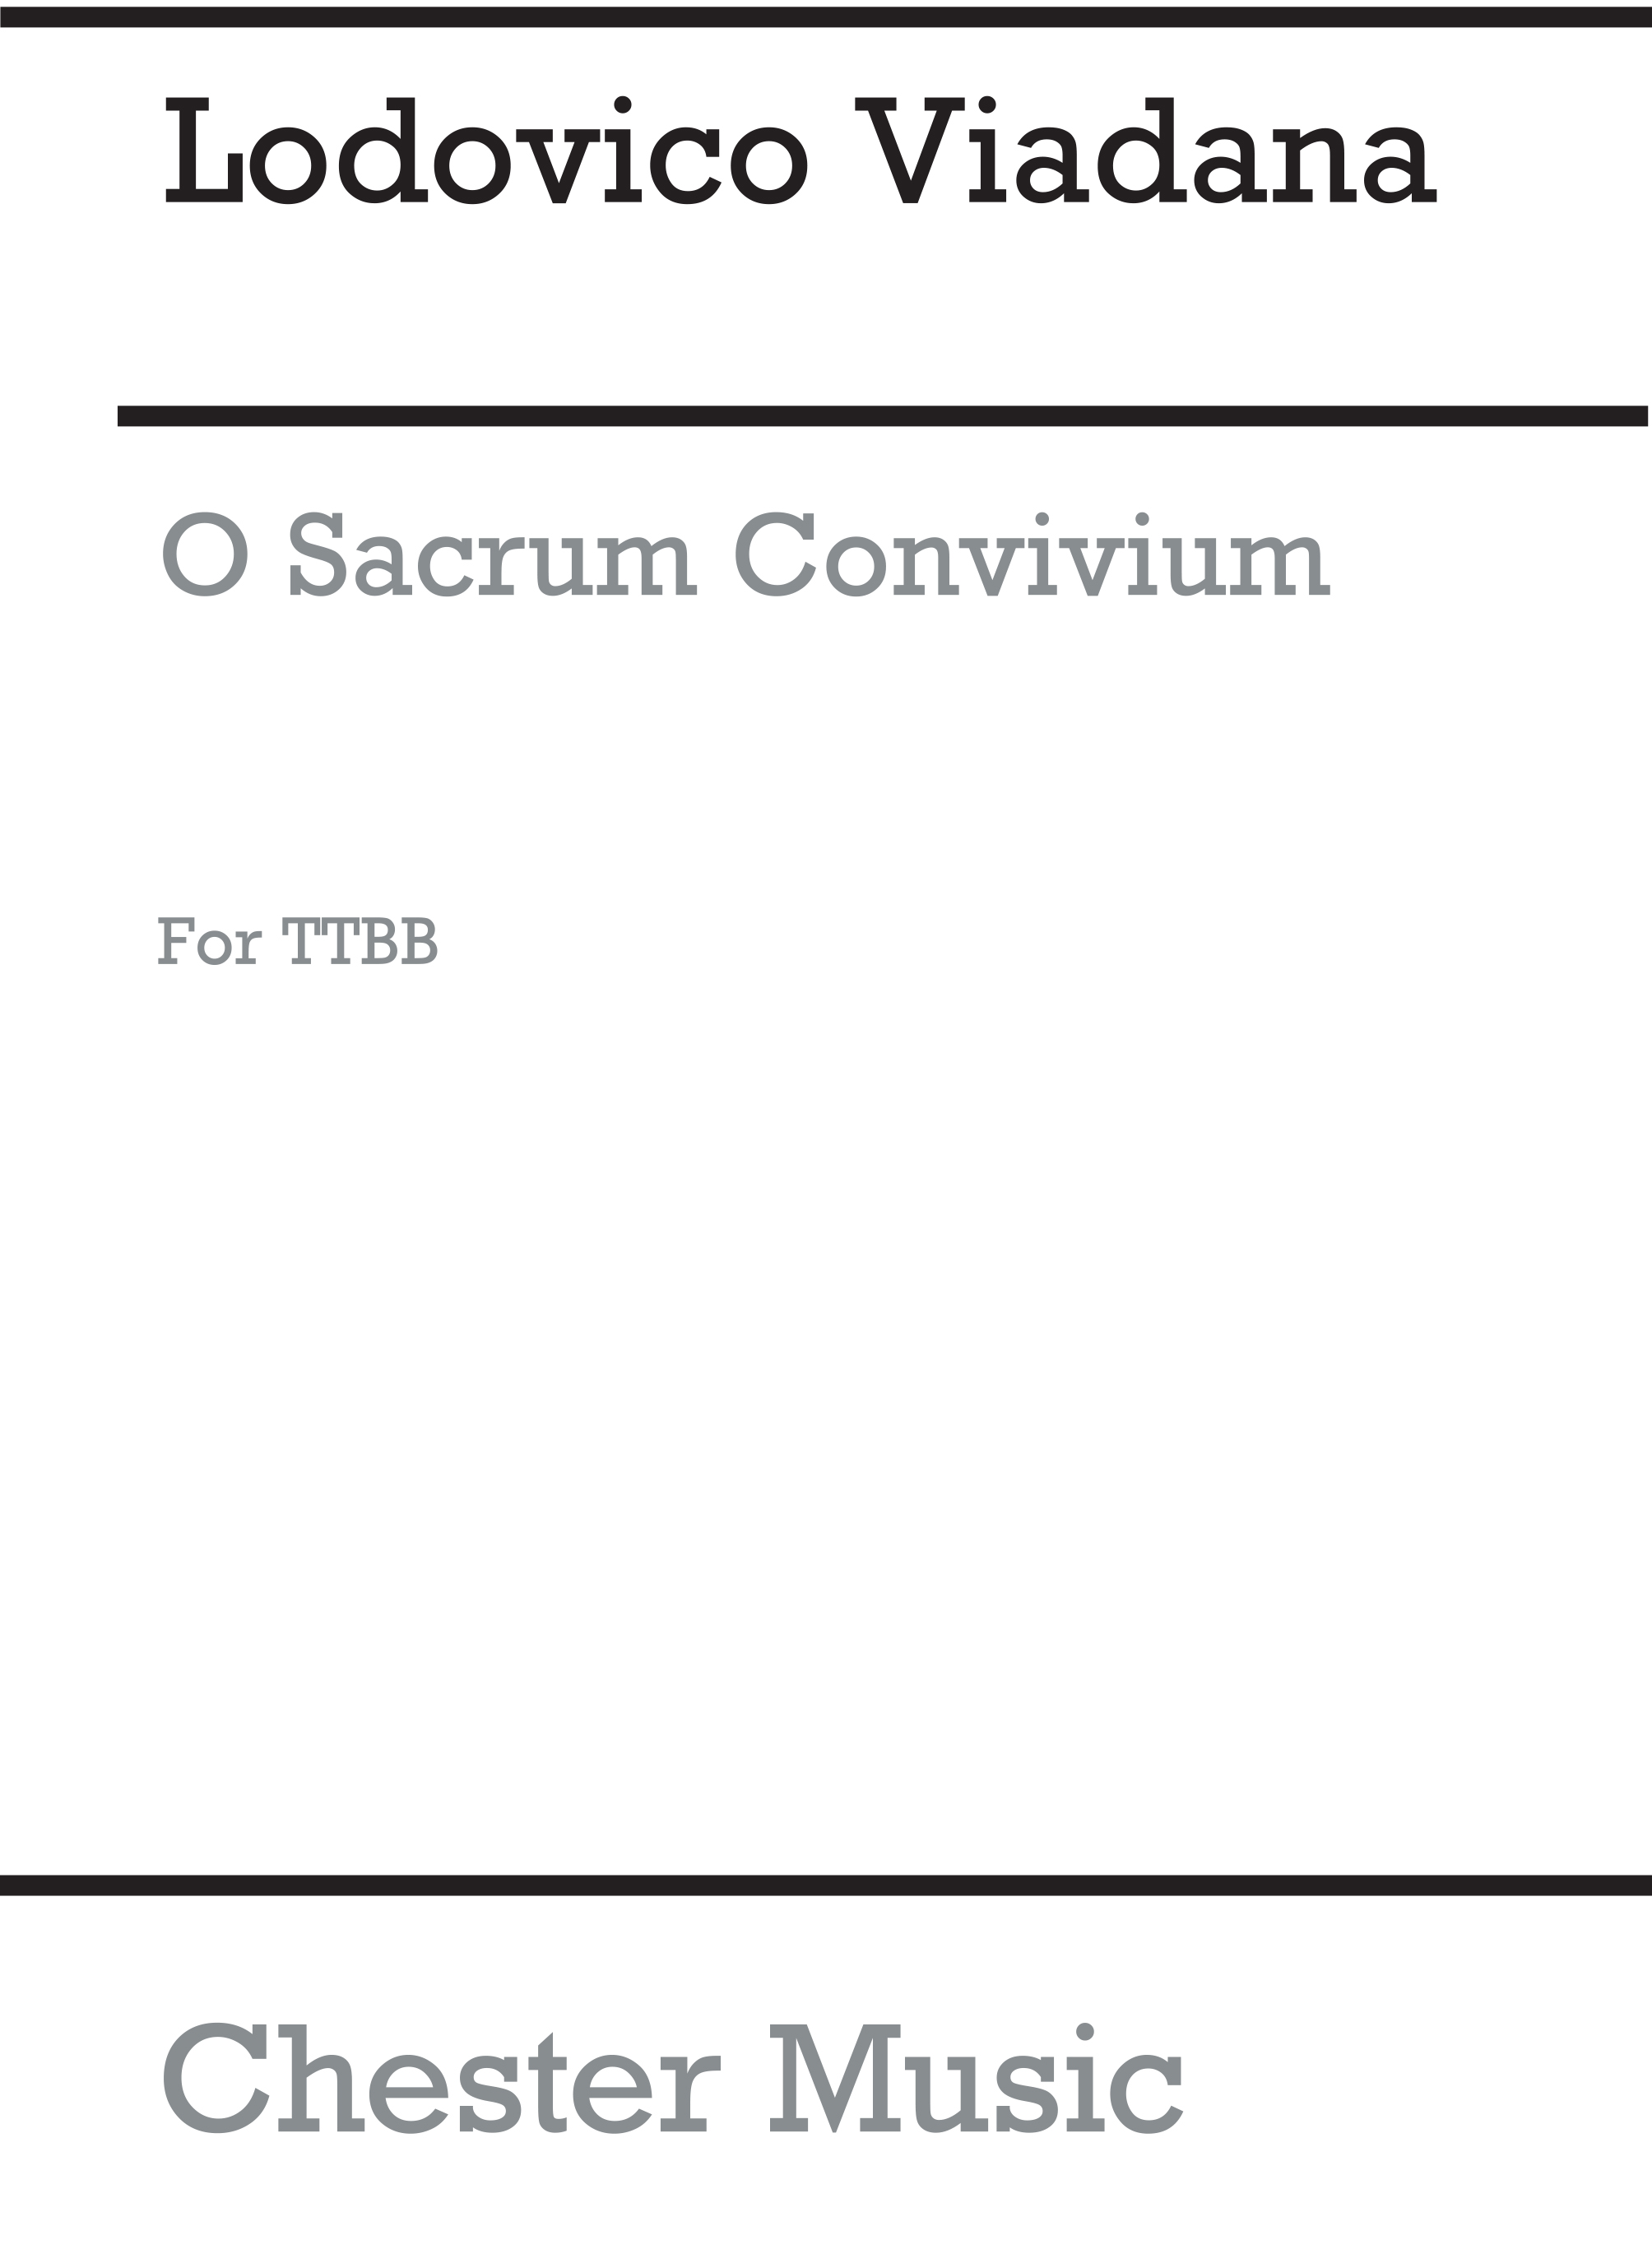 Lodovico Grossi da Viadana: O Sacrum Convivium for TTBB Chorus: Men's Voices: